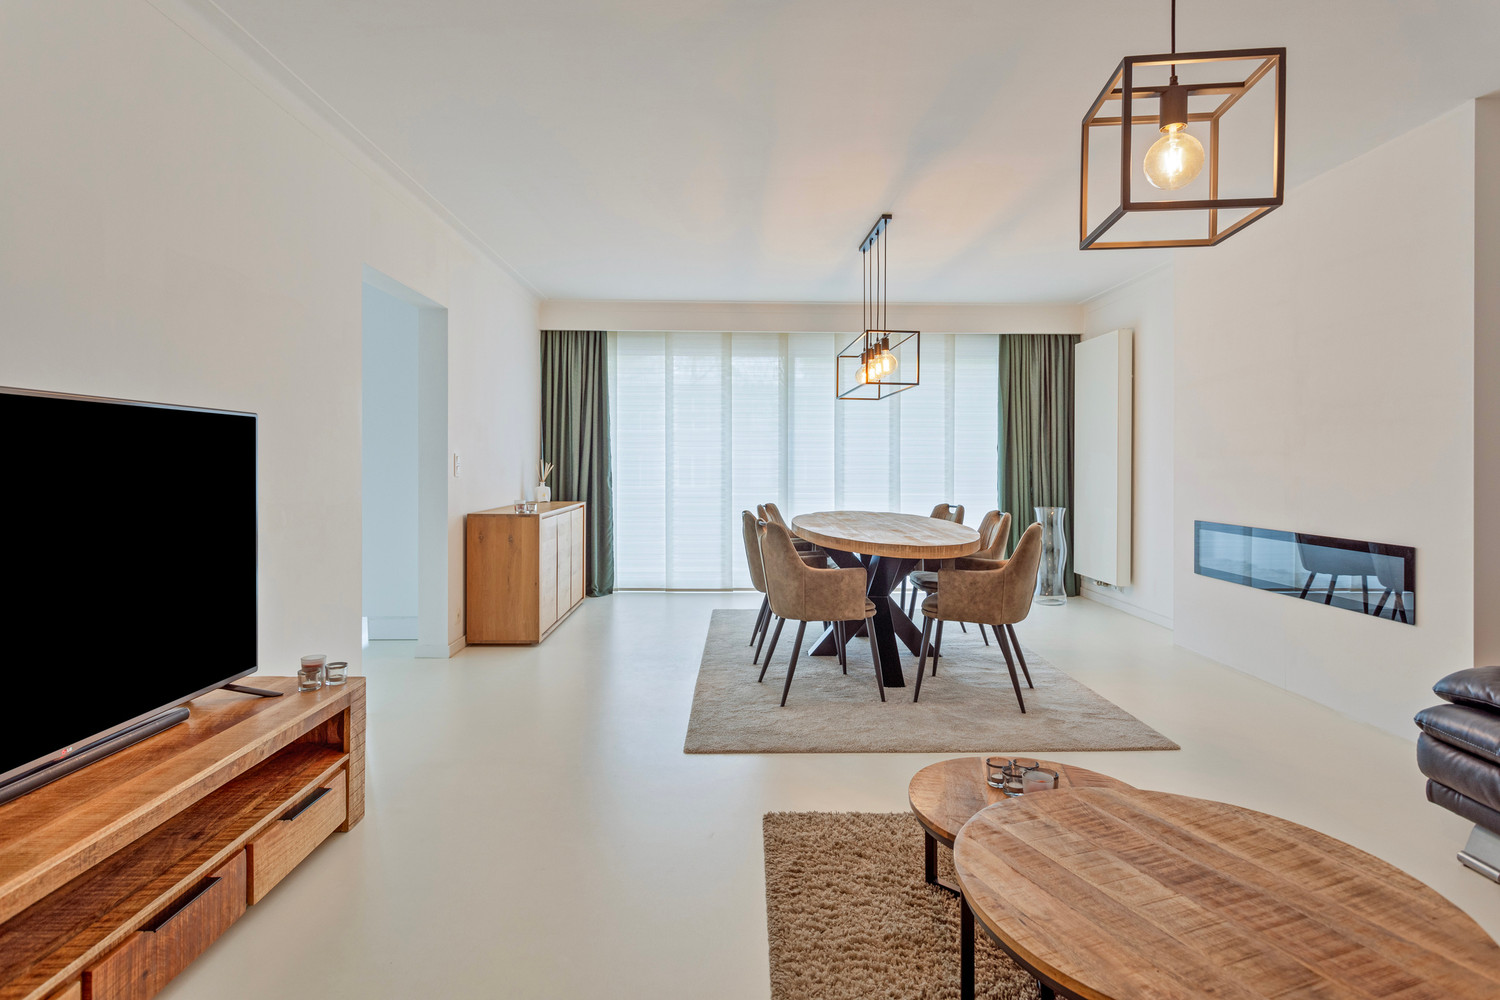 Instapklaar trendy appartement op wandelafstand van het Boekenberg Park met 3 slks, ruim terras en garagebox! foto 1